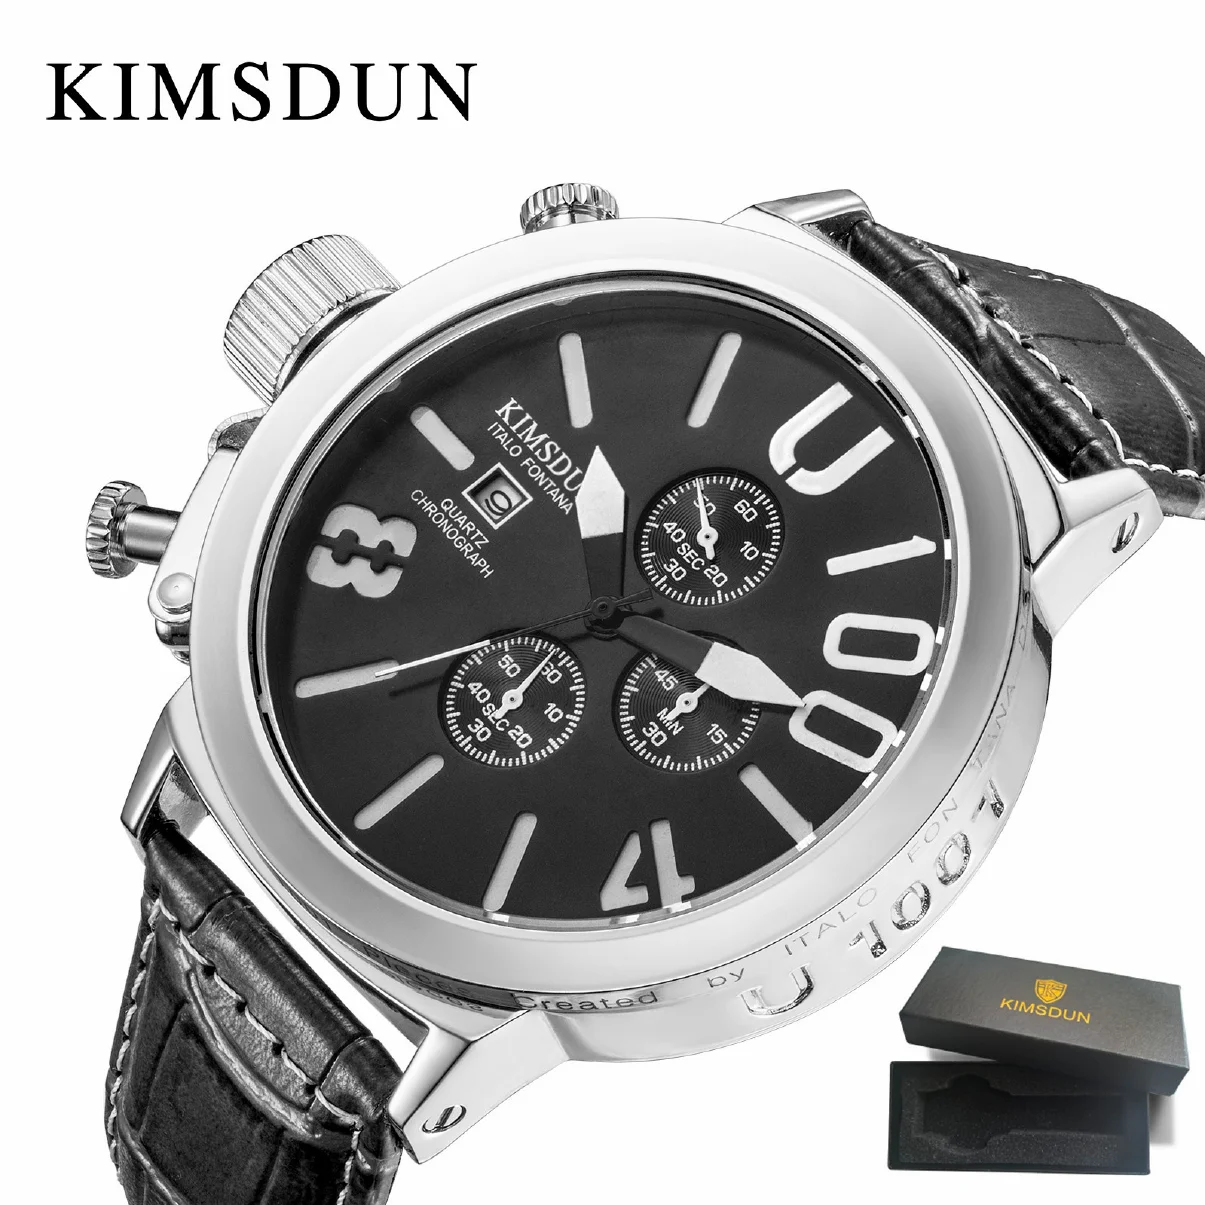 

KIMSDUN брендовые большие мужские модные роскошные повседневные кварцевые часы-хронограф с кожаным ремешком в подарок военные часы наручные ч...